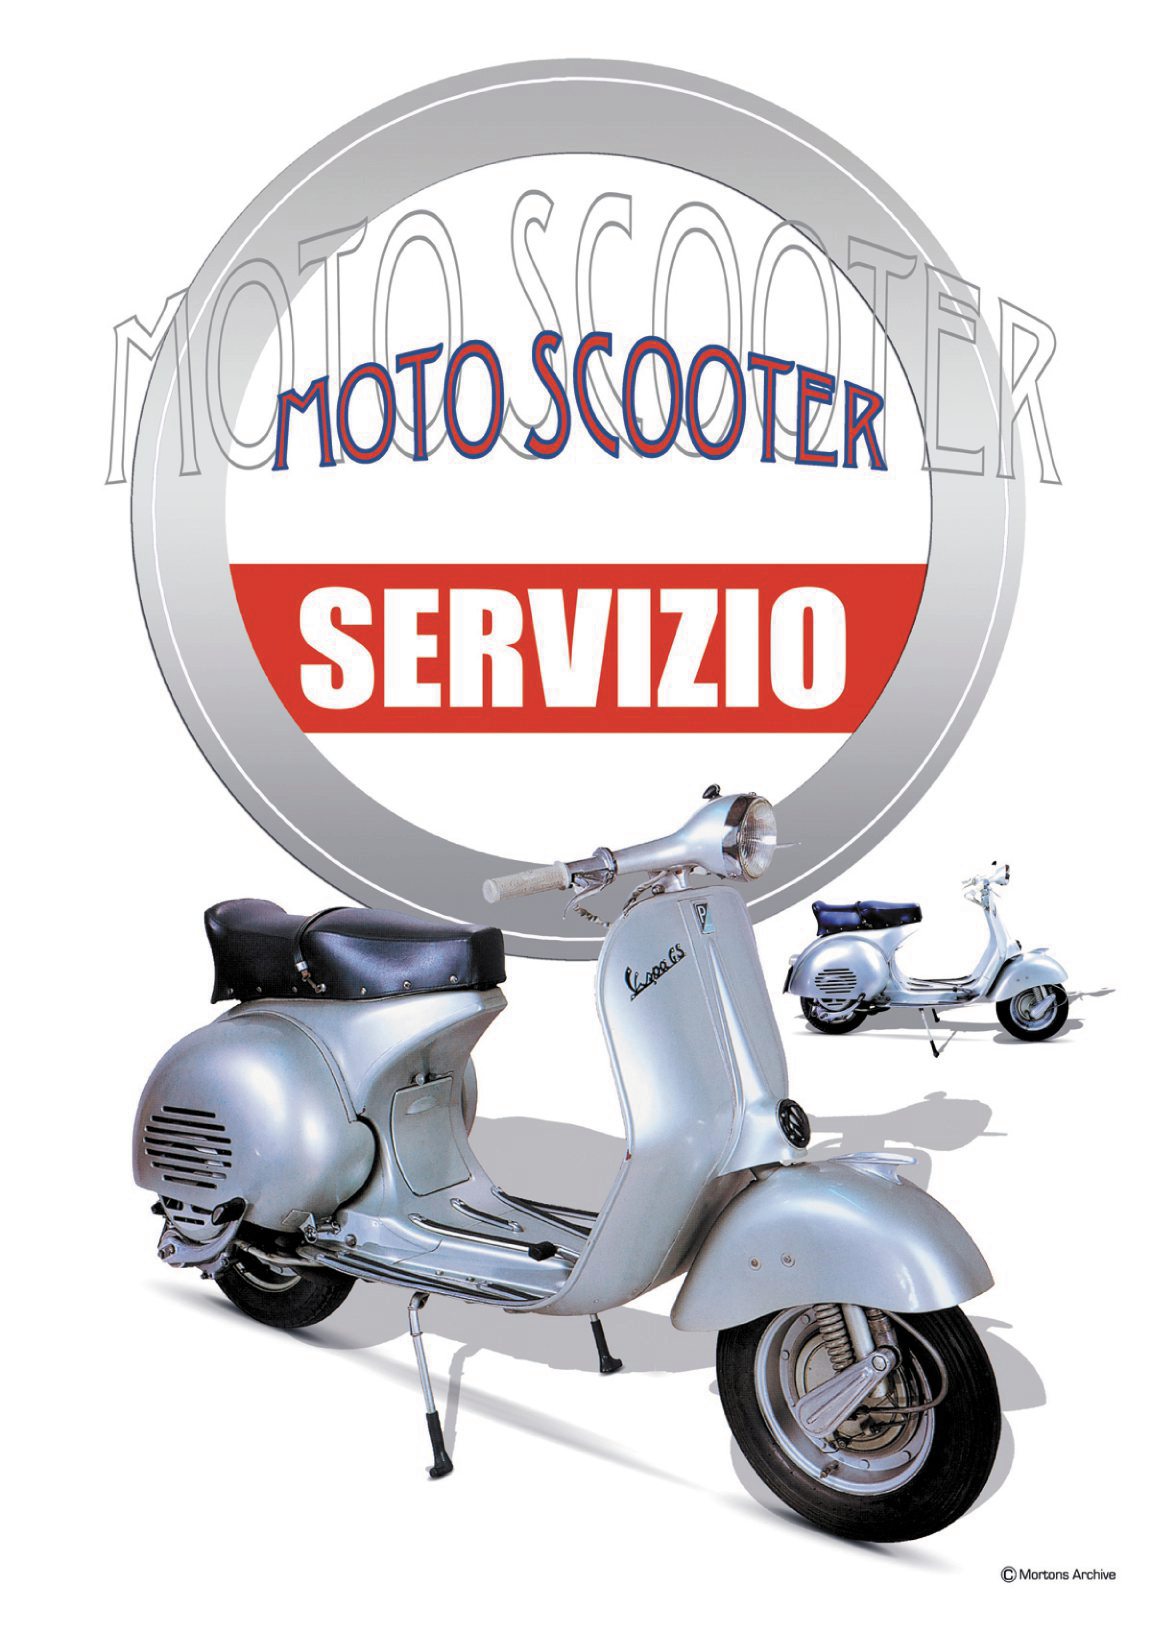 Vespa Servizio Scooter A - A3 Poster / Print